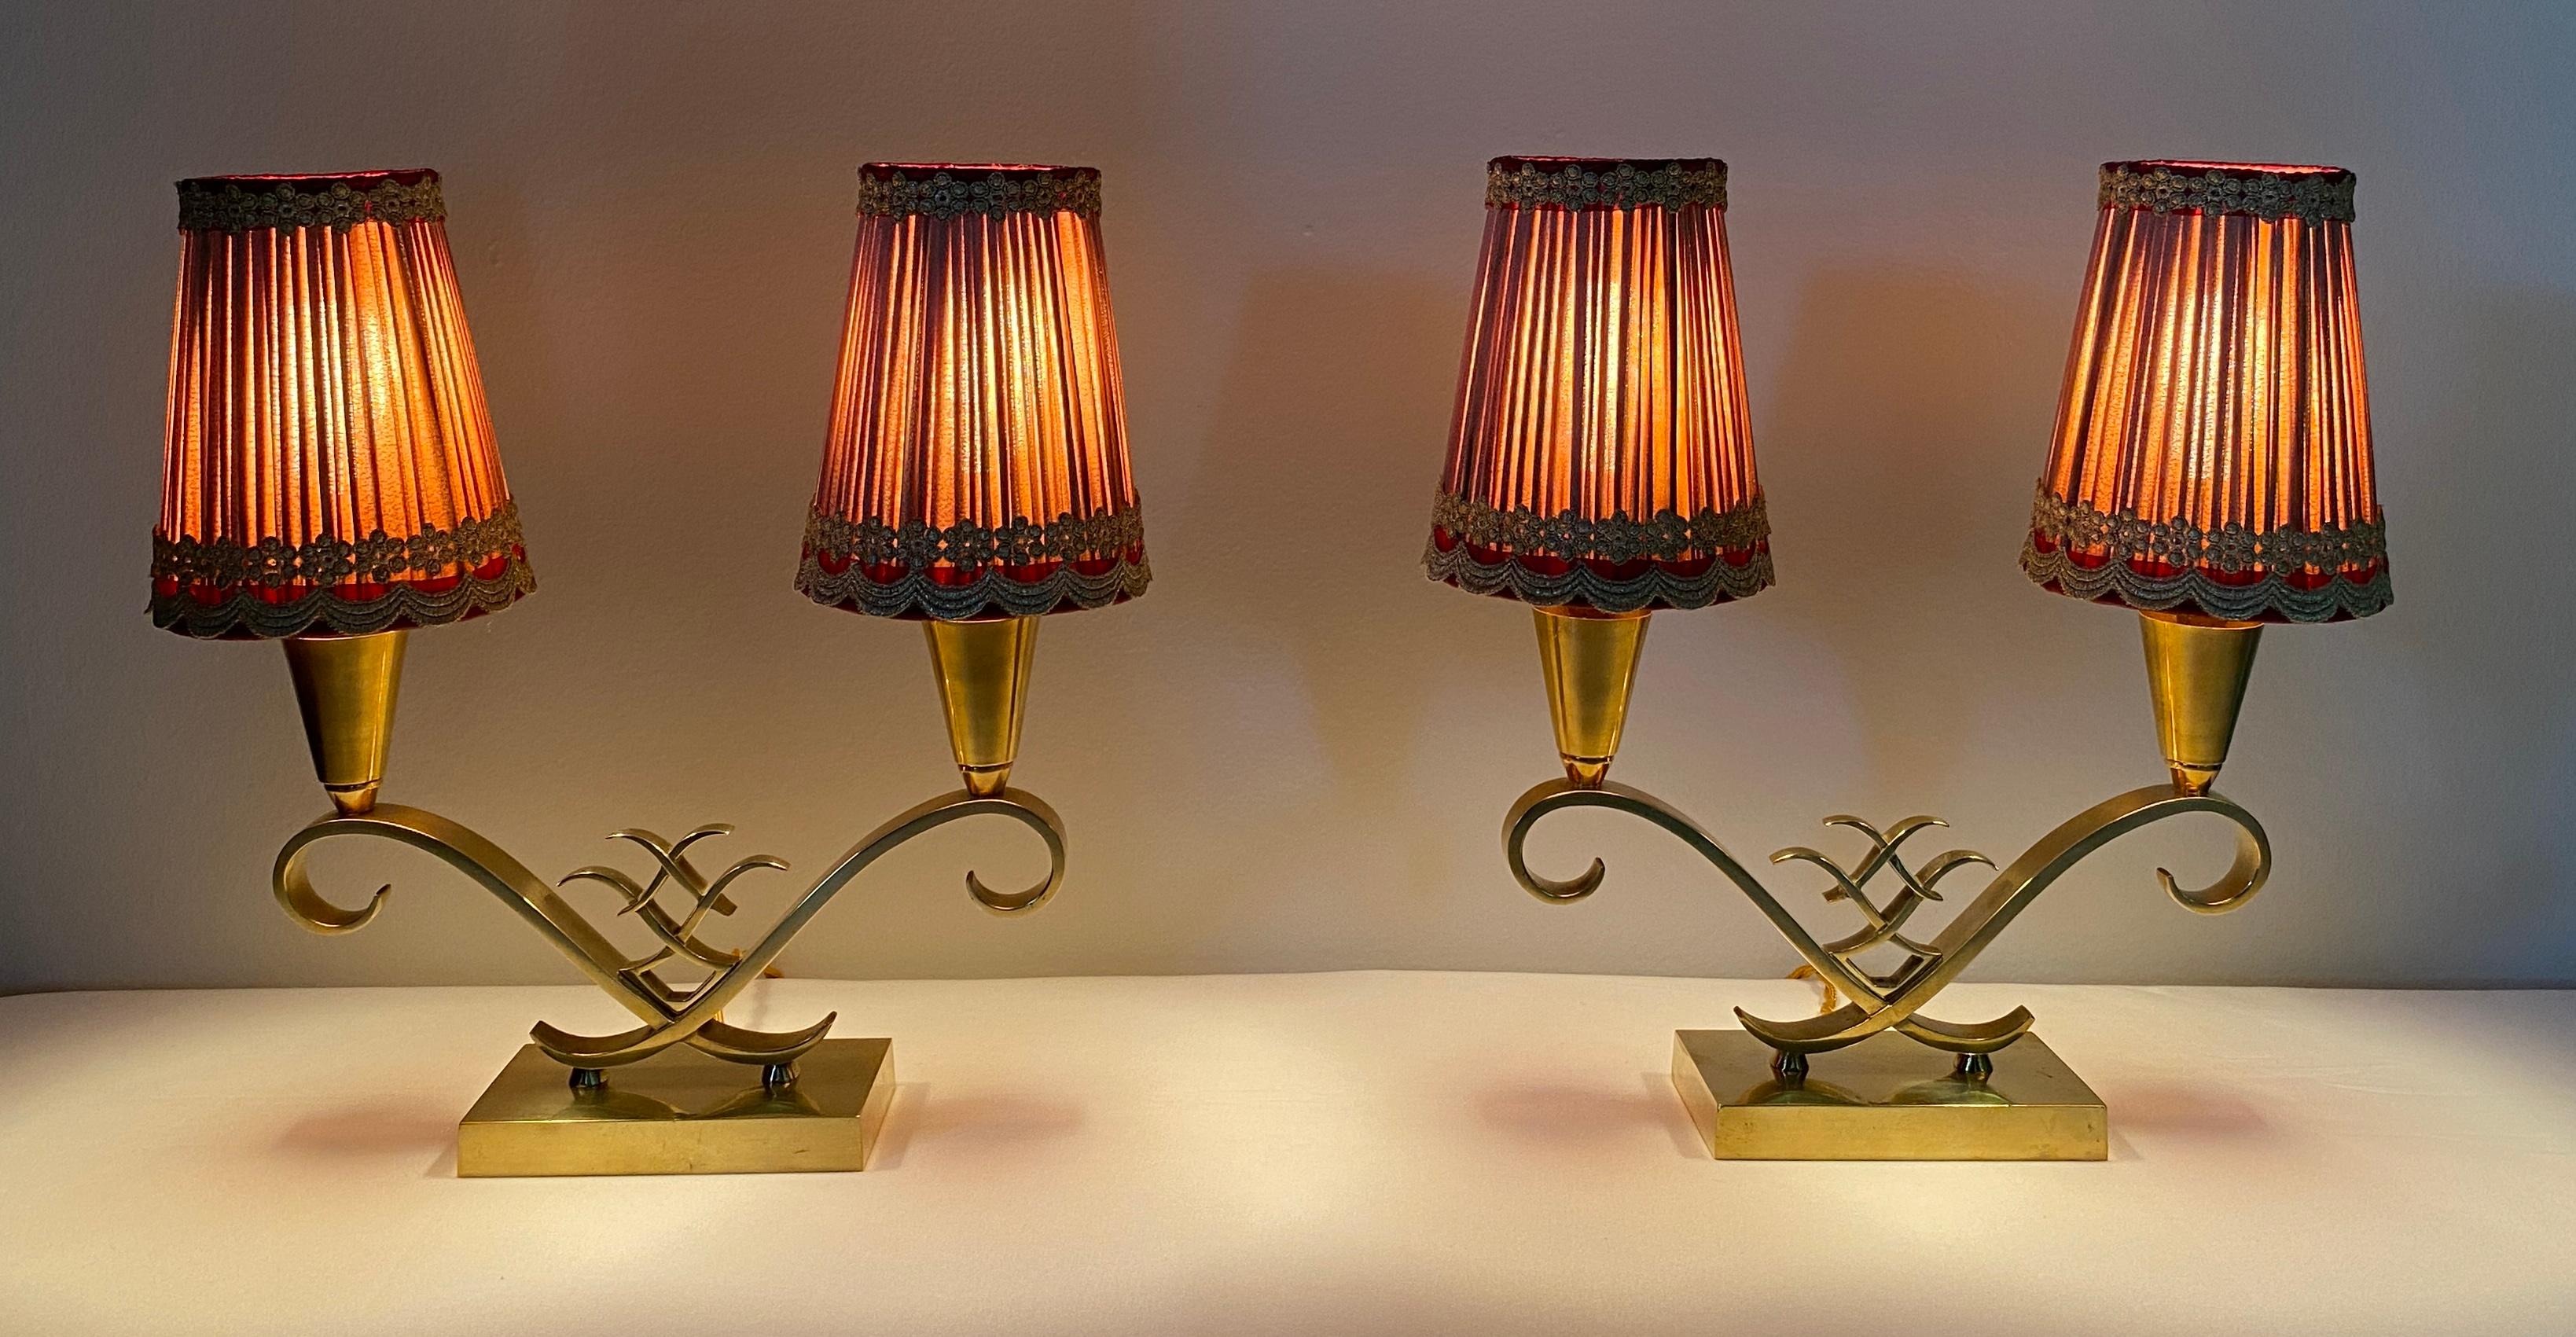 Atemberaubendes Paar originaler antiker Art-Déco-Tischlampen, die Jules Leleu zugeschrieben werden. Das geometrische Design, das sich an der neoklassischen Form orientiert, ist einzigartig und elegant.  Mit diesen Merkmalen passen sie zu einer Reihe